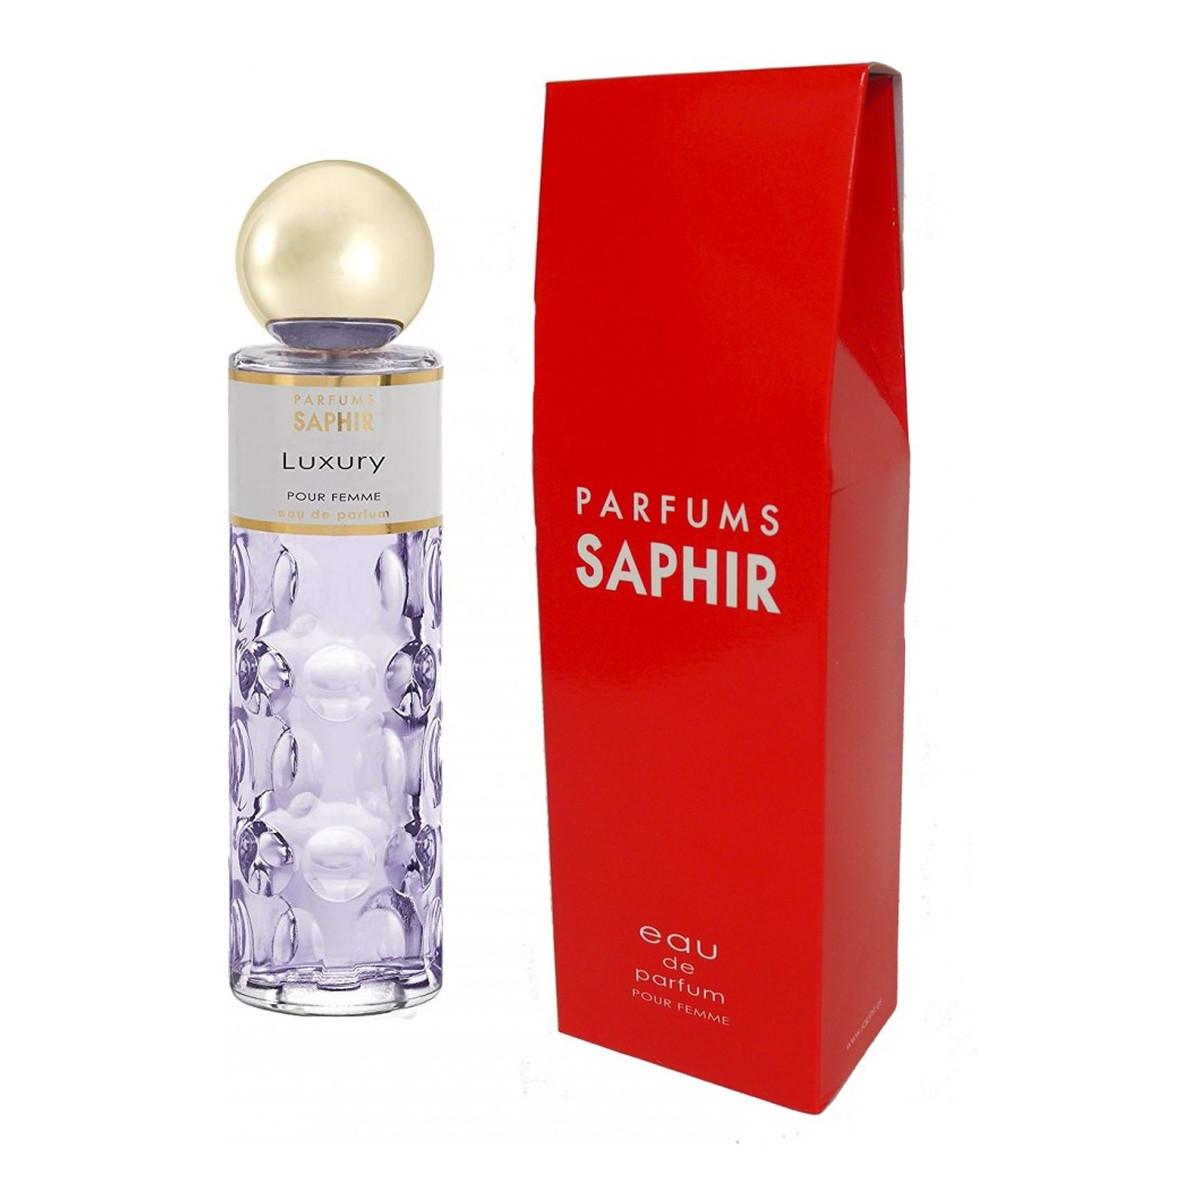 Saphir Luxury Woda perfumowana 200ml